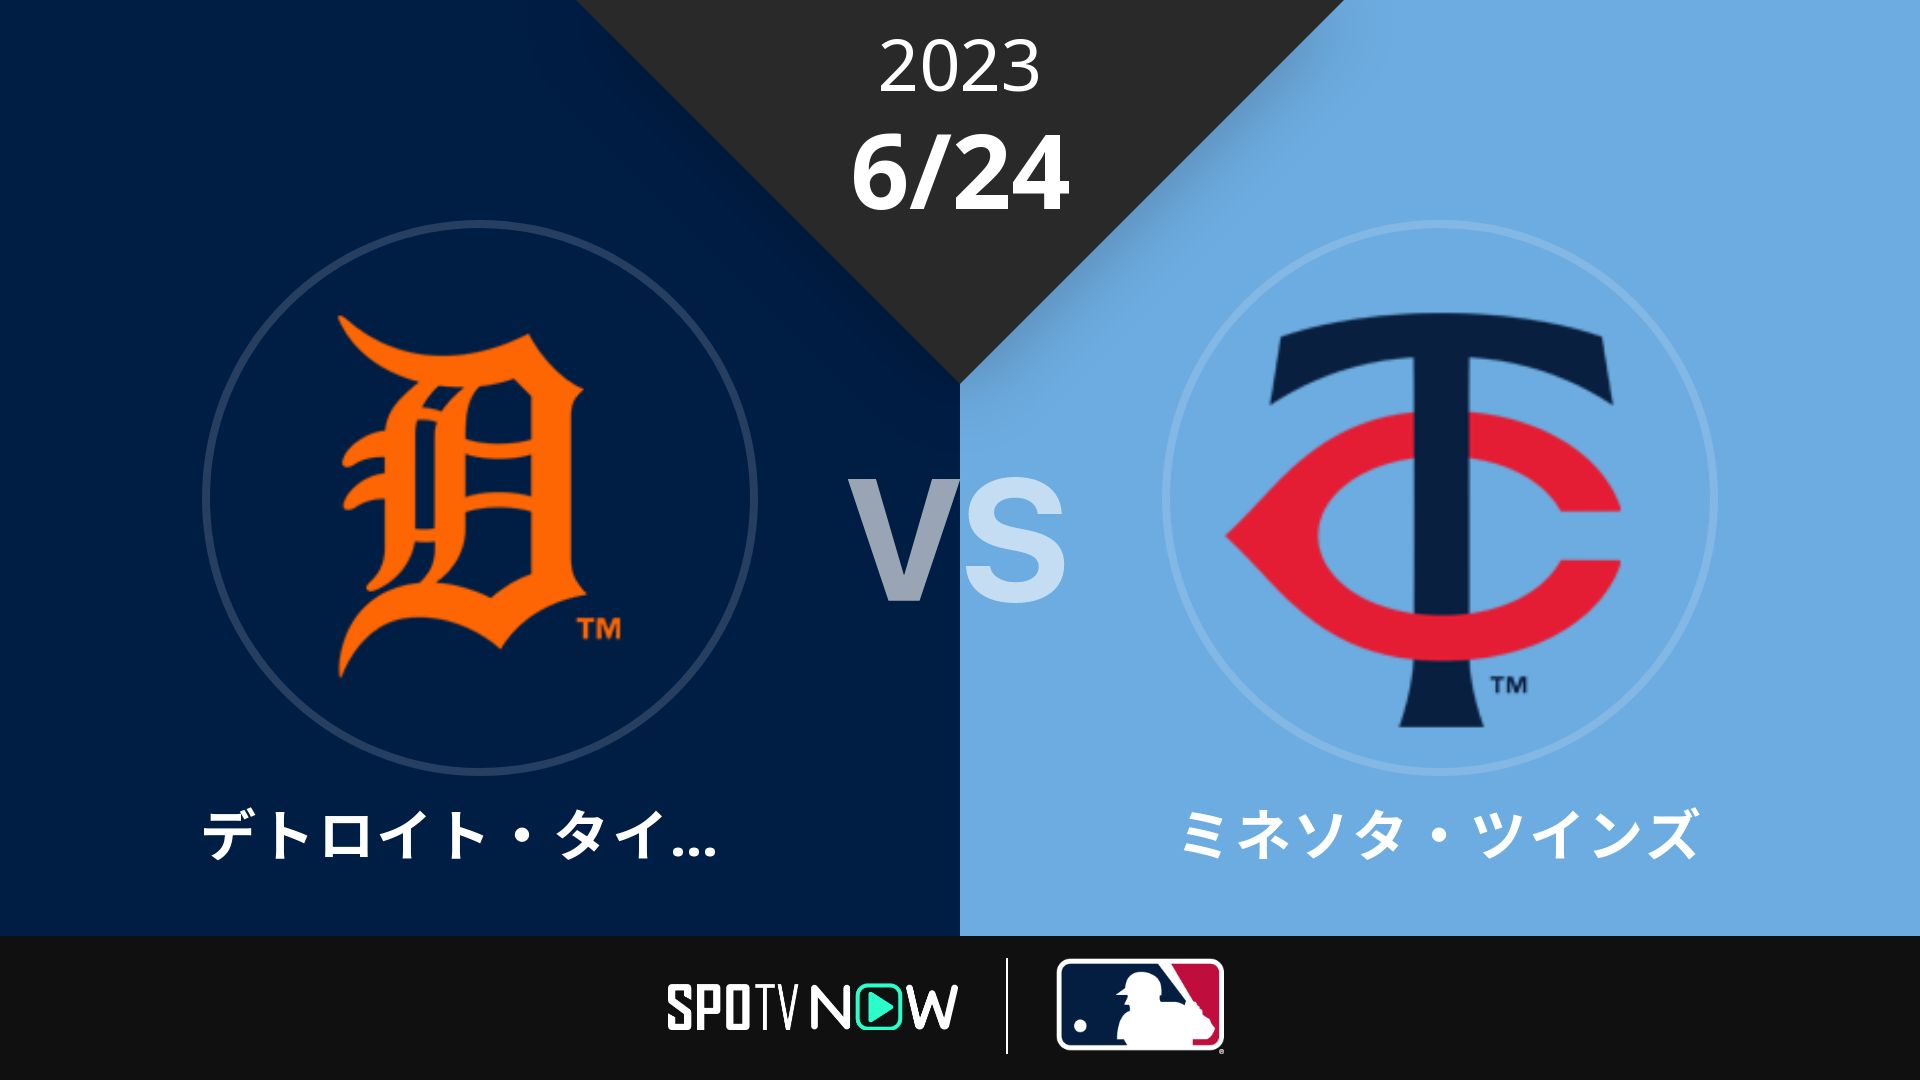 2023/6/24 タイガース vs ツインズ [MLB]